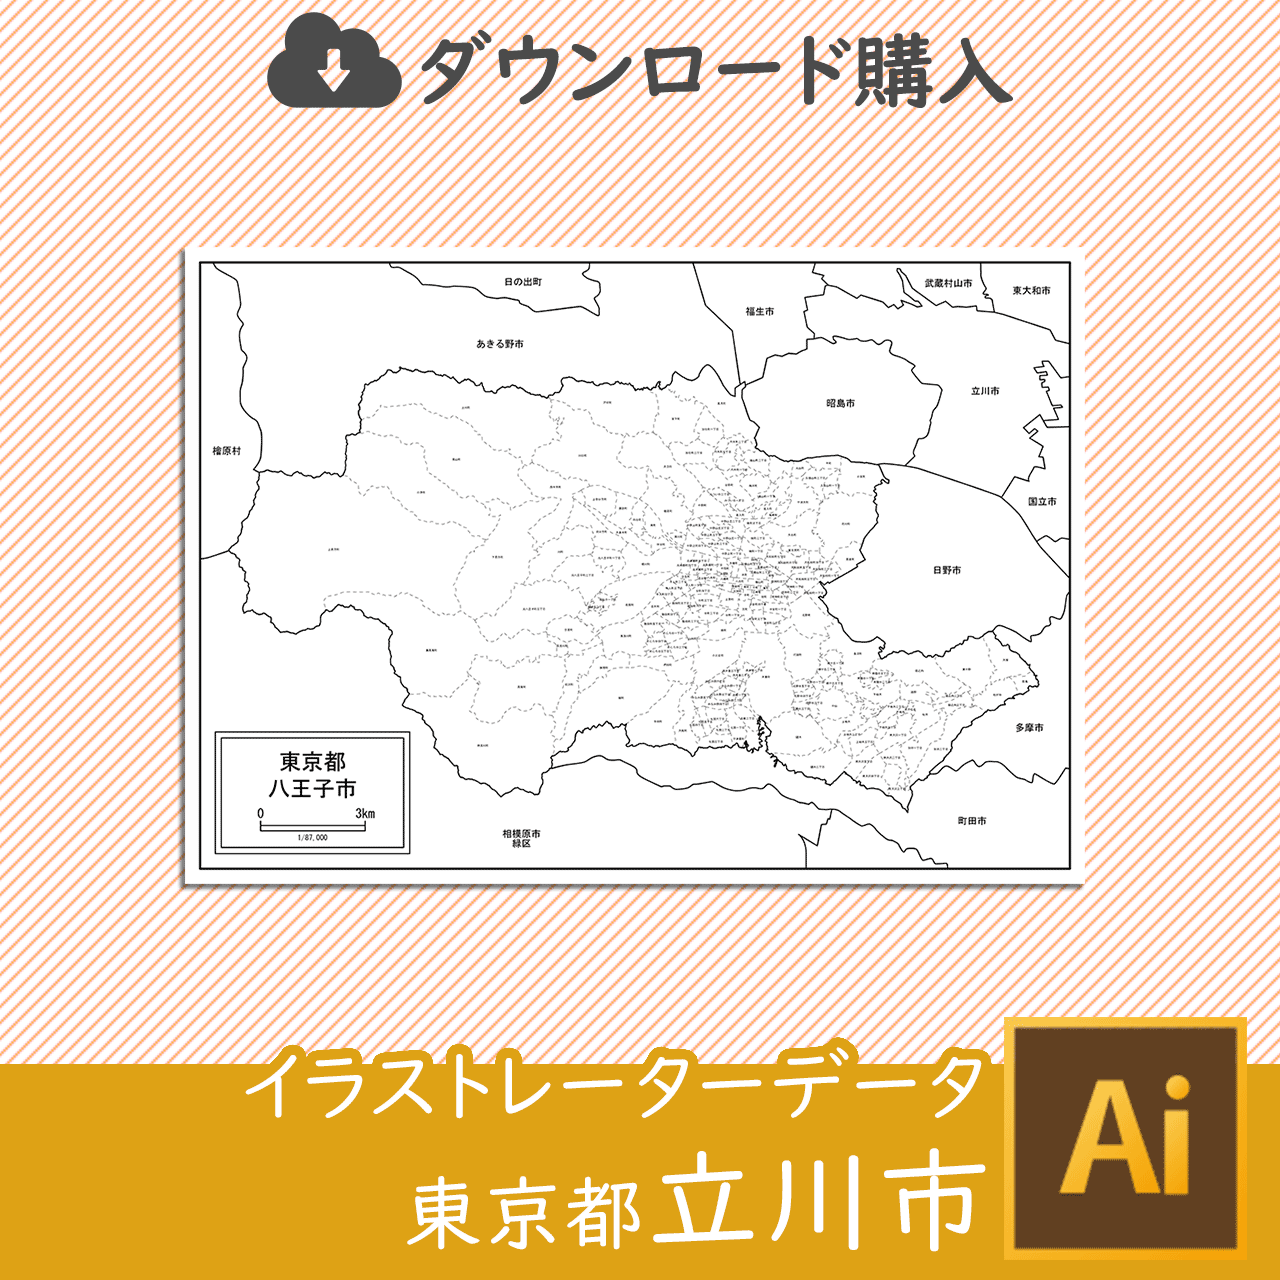 立川市のaiデータのサムネイル画像